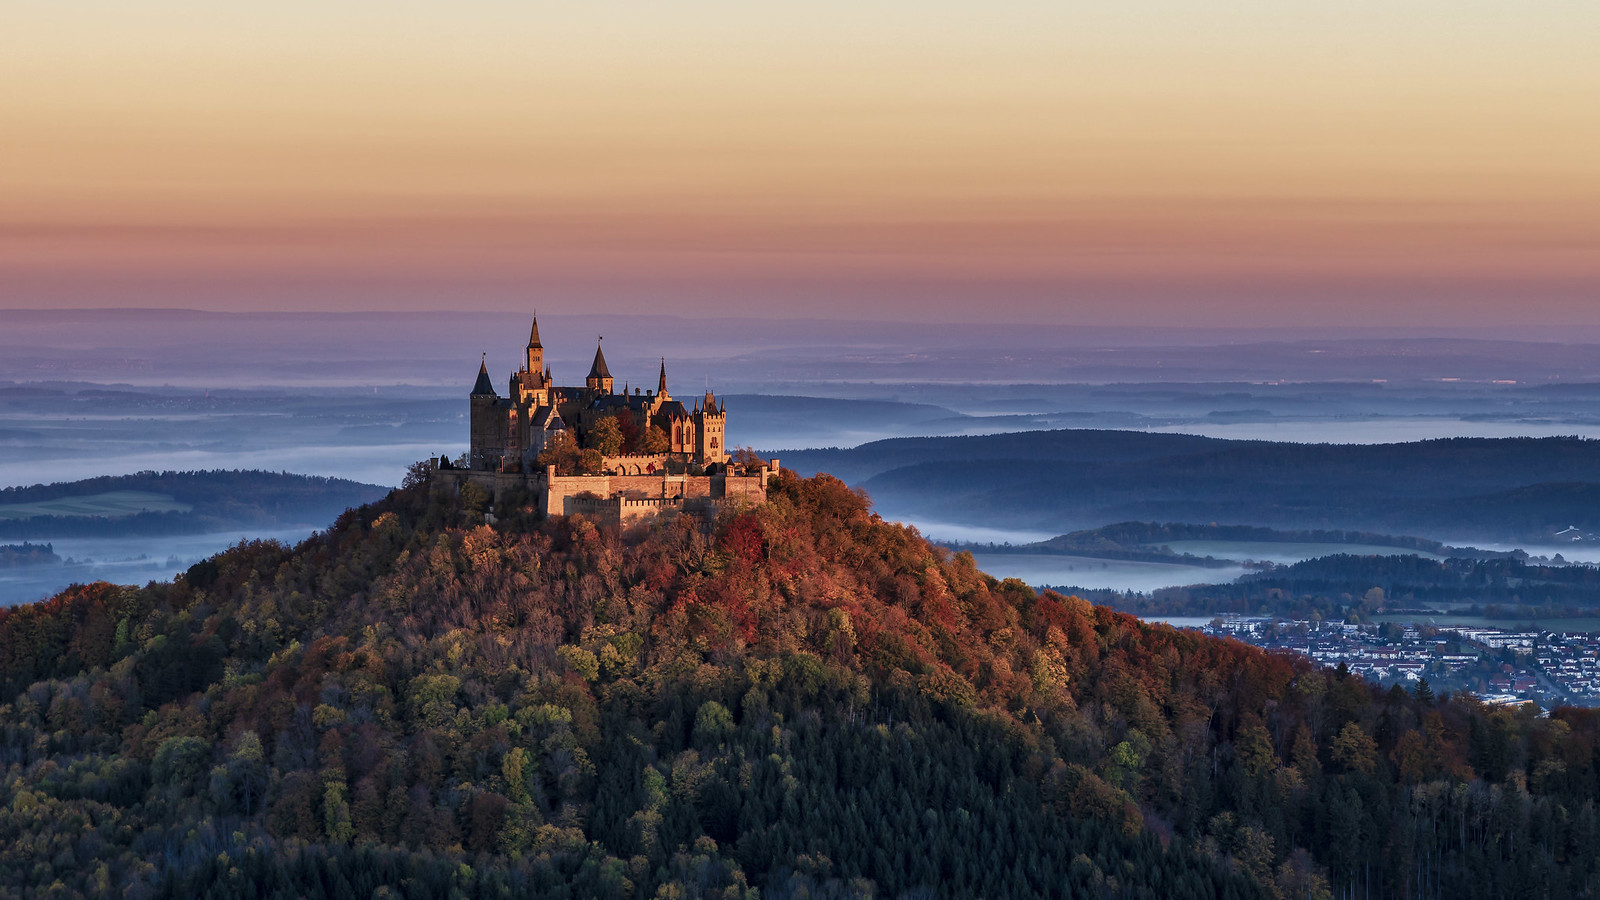 Burg Hohenzollern | Der Aussichtspunkt bietet einen weiten B… | Flickr